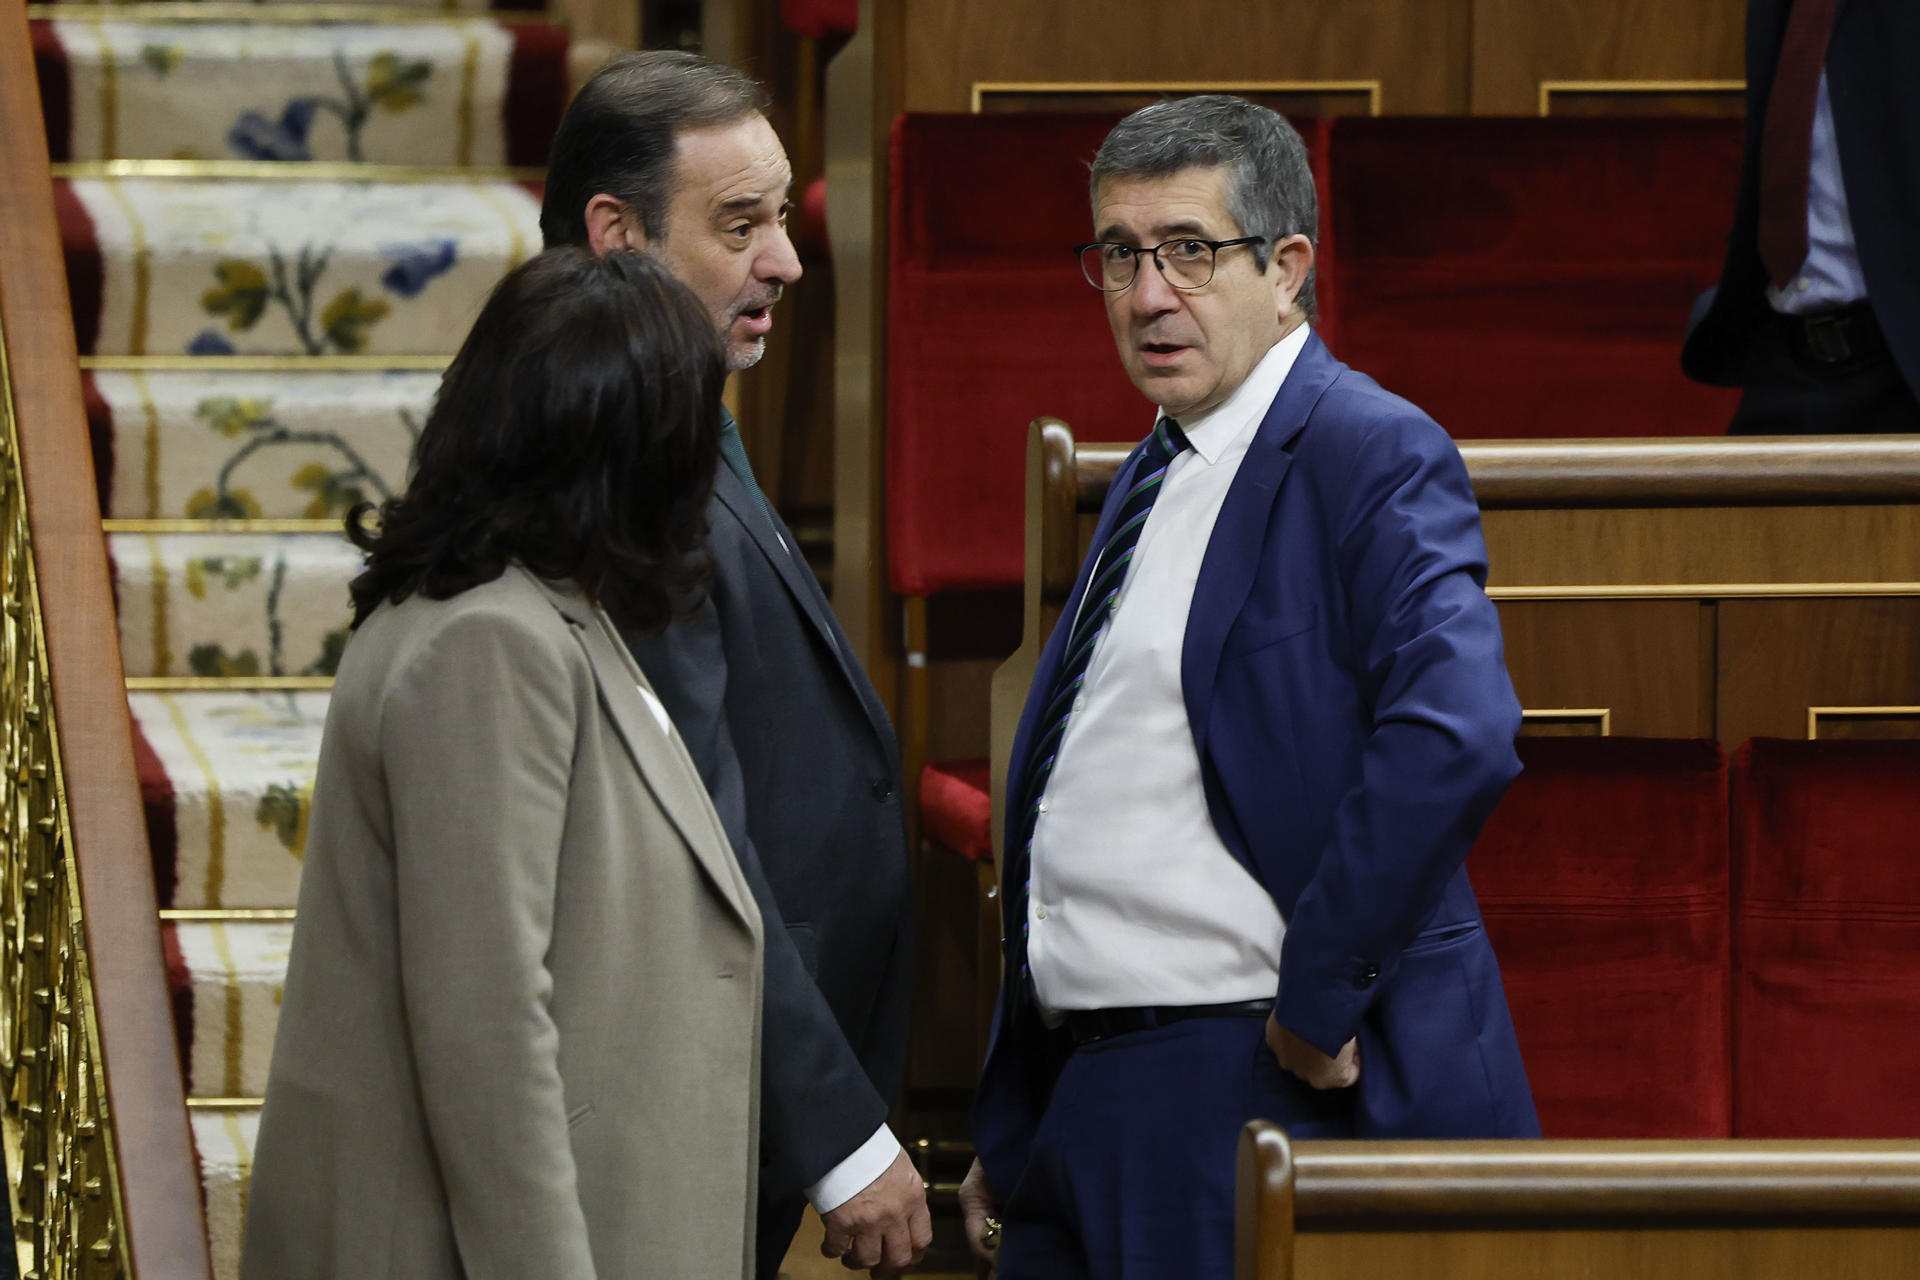 El PSOE promete a Puigdemont "cumplir siempre los pactos" ante la amenaza de una moción de censura